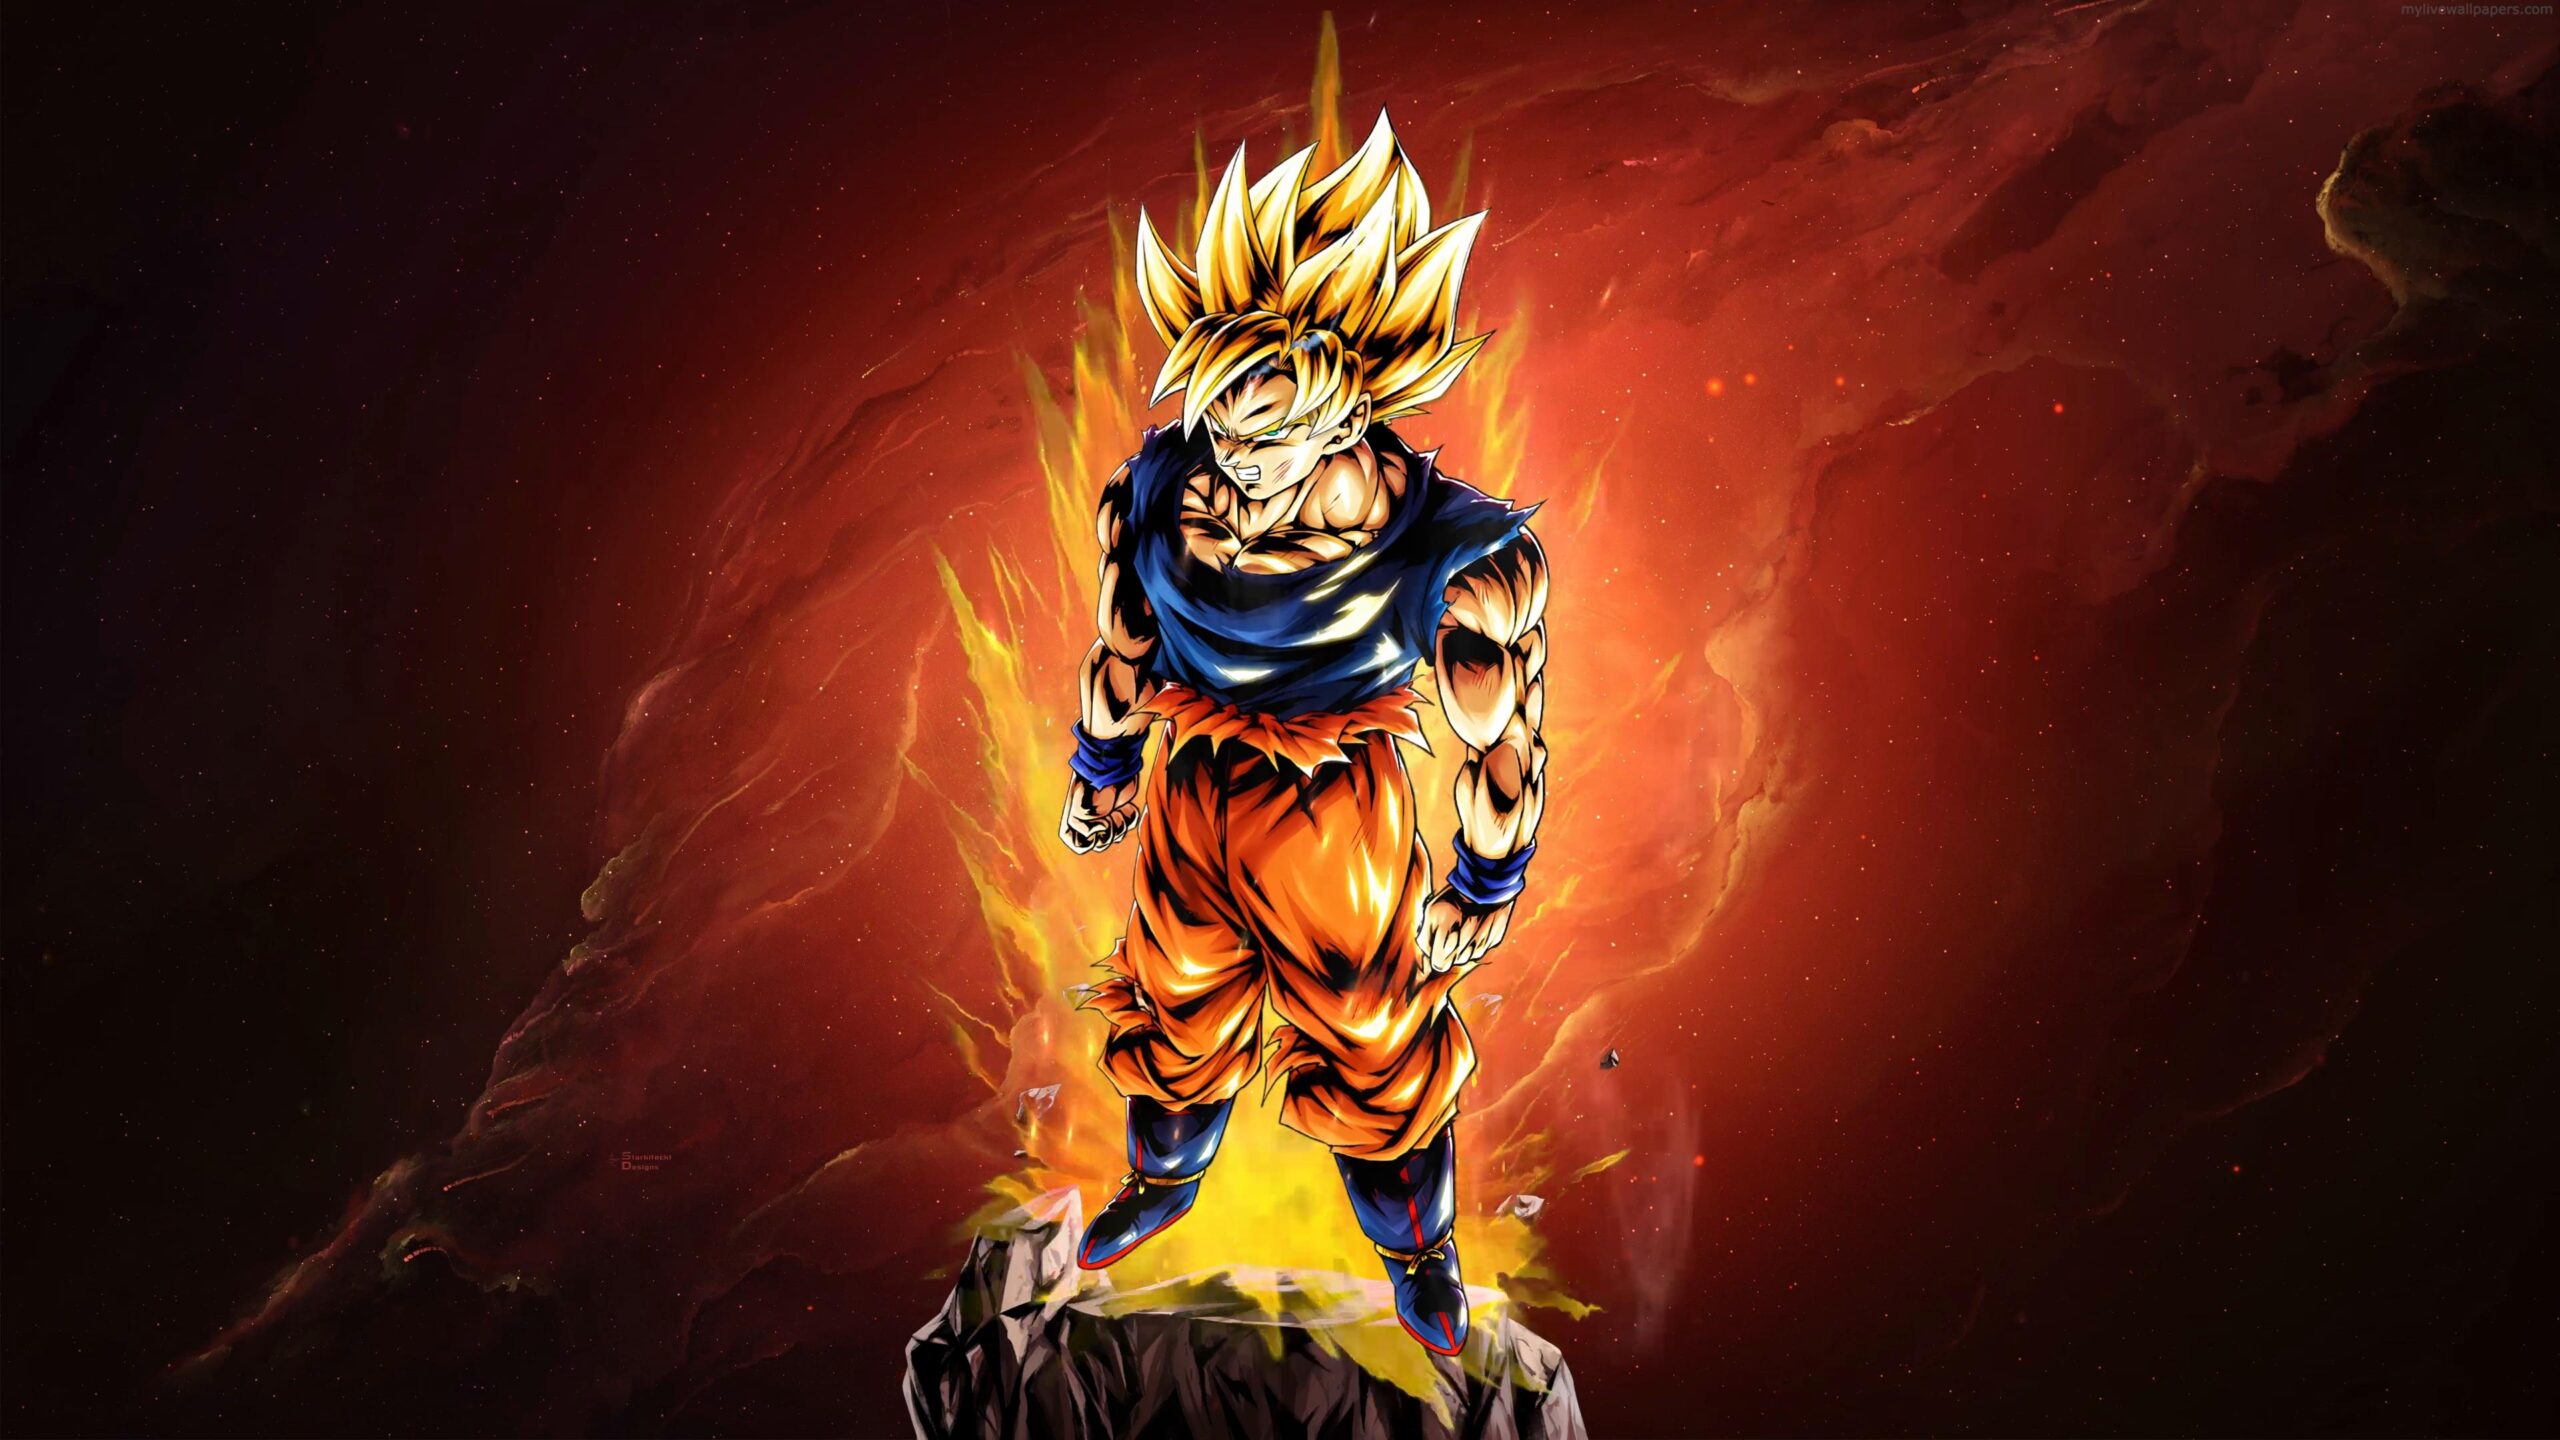 Goku Wallpaper: An Animated Marvel for Dragon Ball Enthusiasts